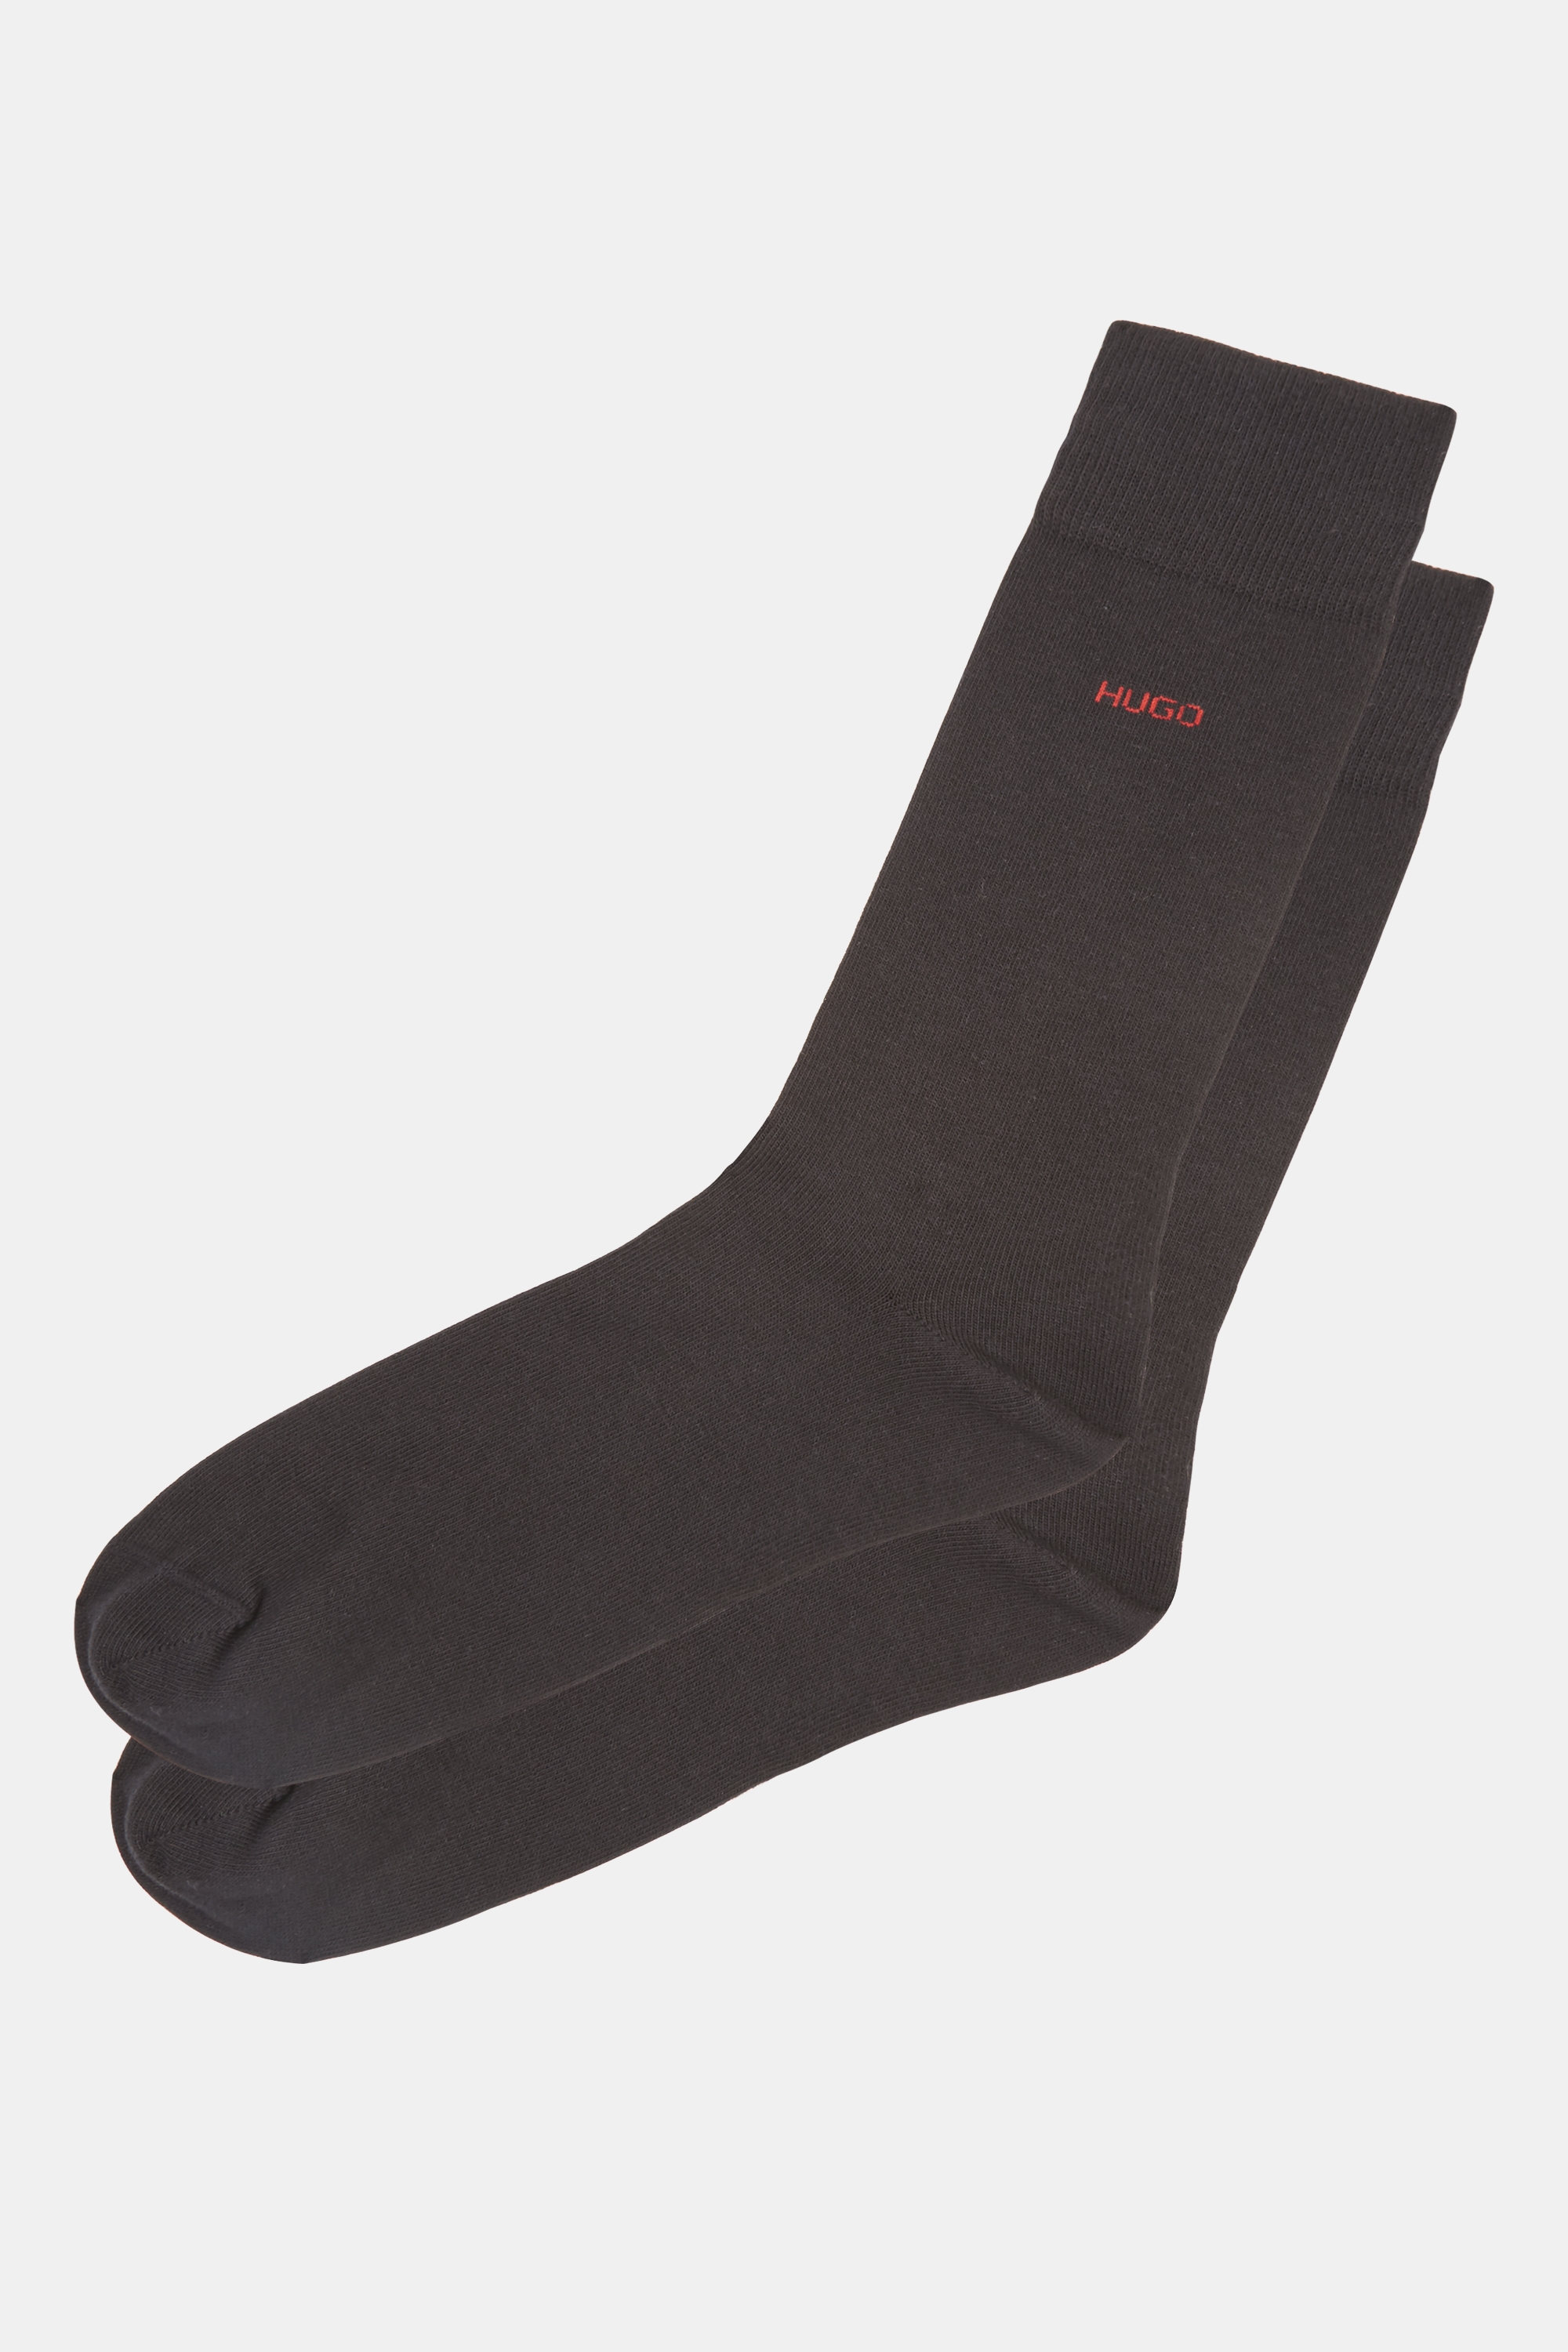 Hugo Boss 2 Pack Black Socks